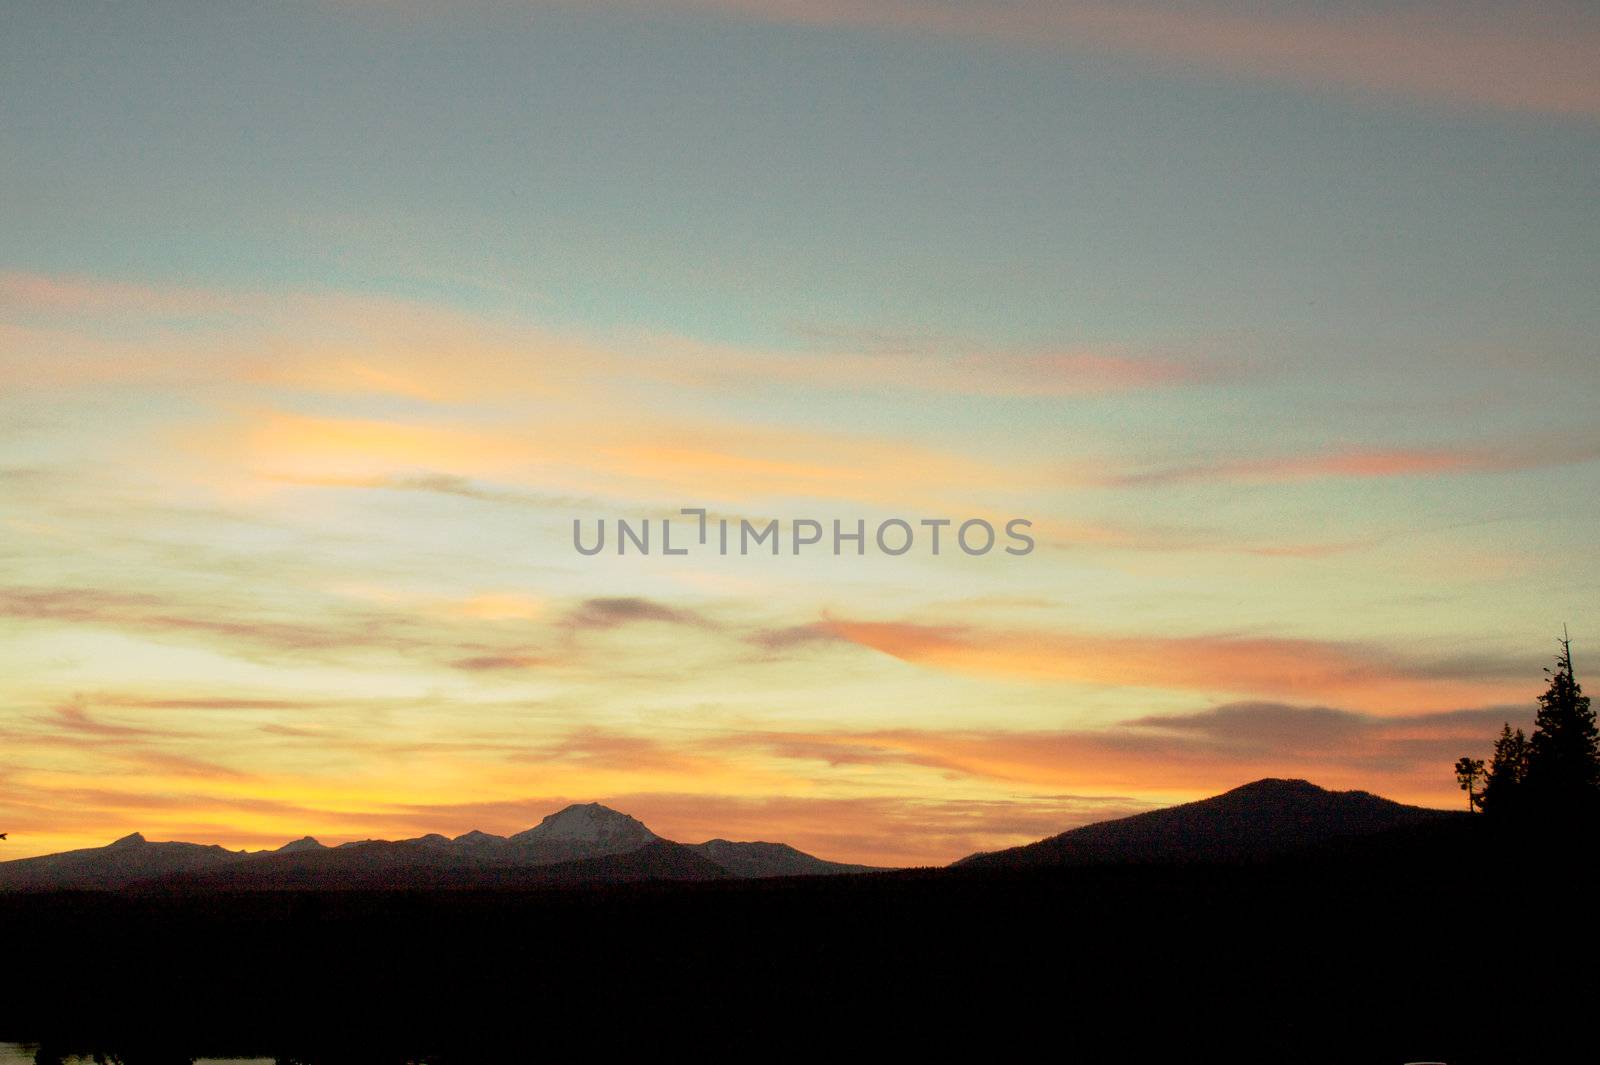 Lassen Mountain Sunset b by bobkeenan